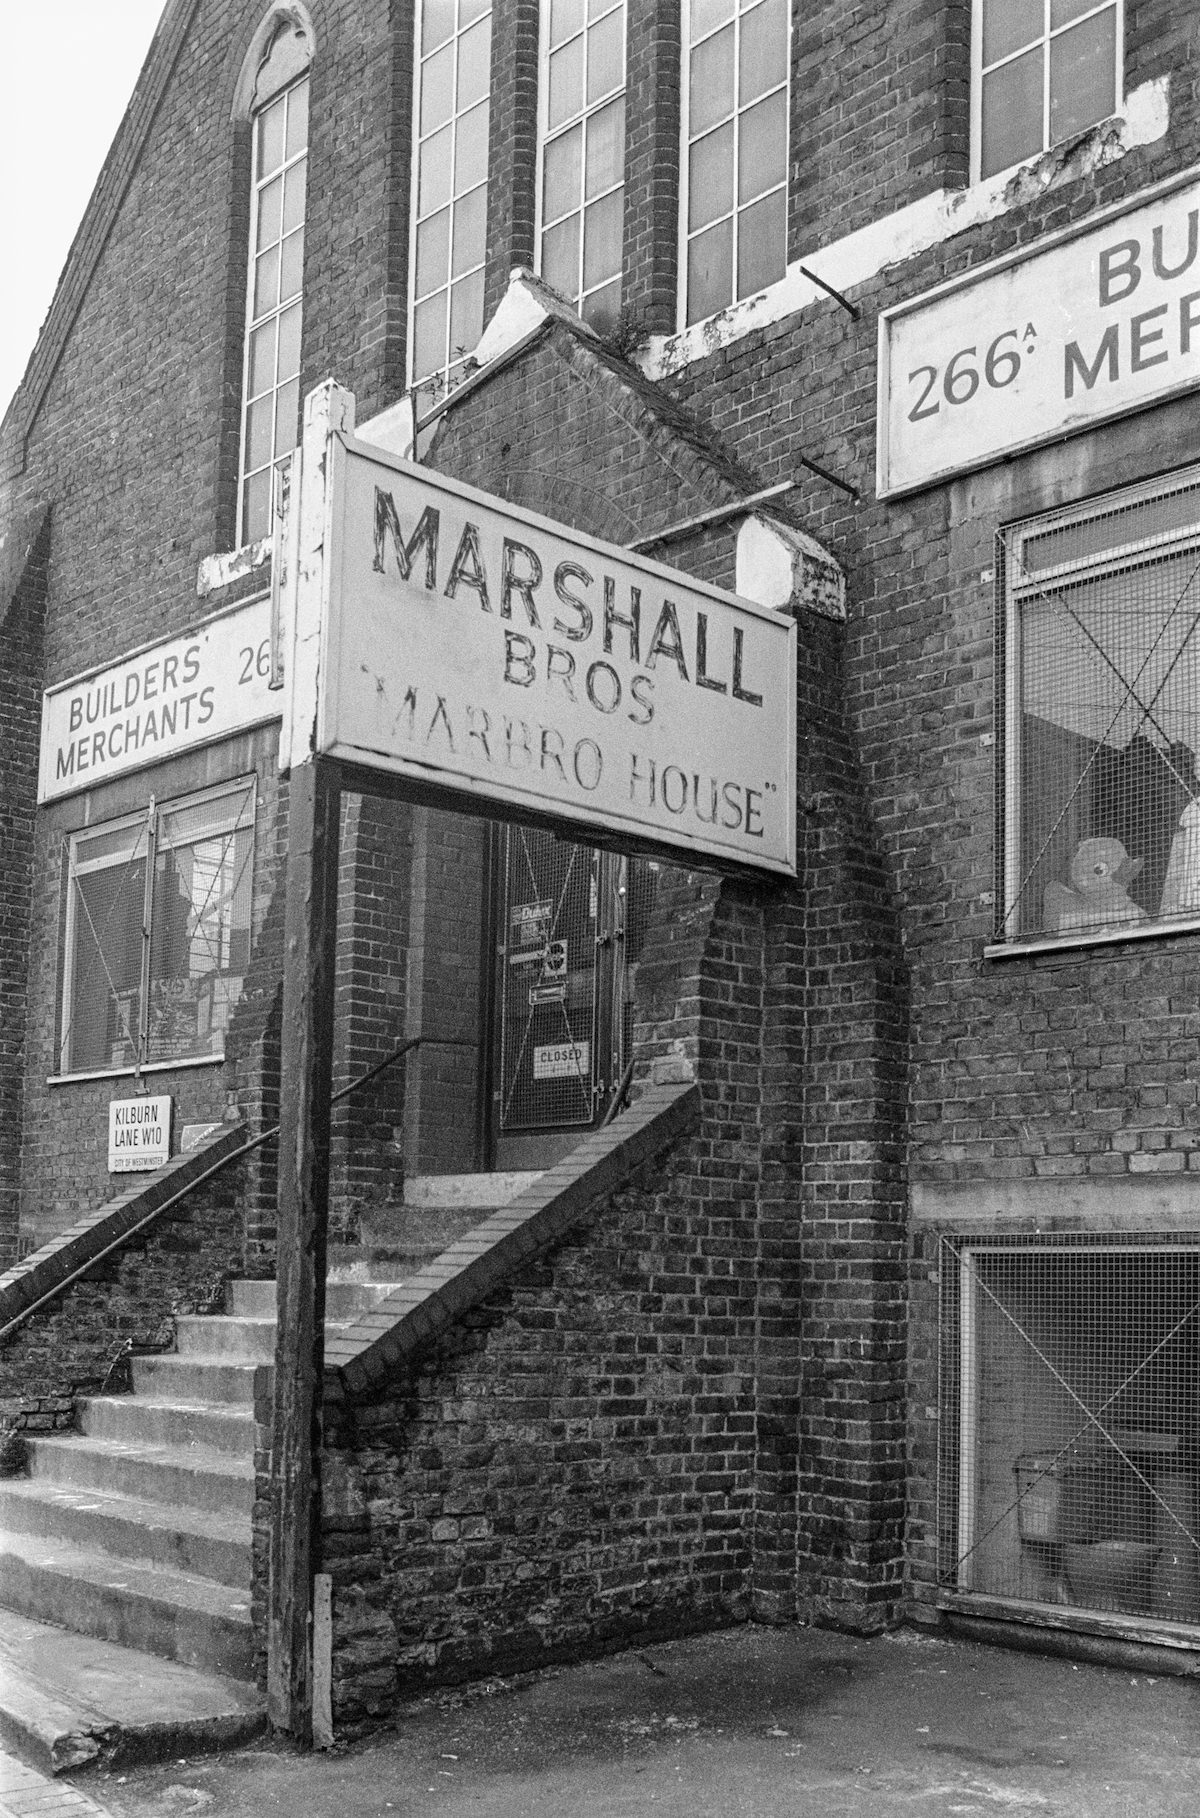 Marshall Bros, Kilburn Lane, West Kilburn, Westminster, 1988